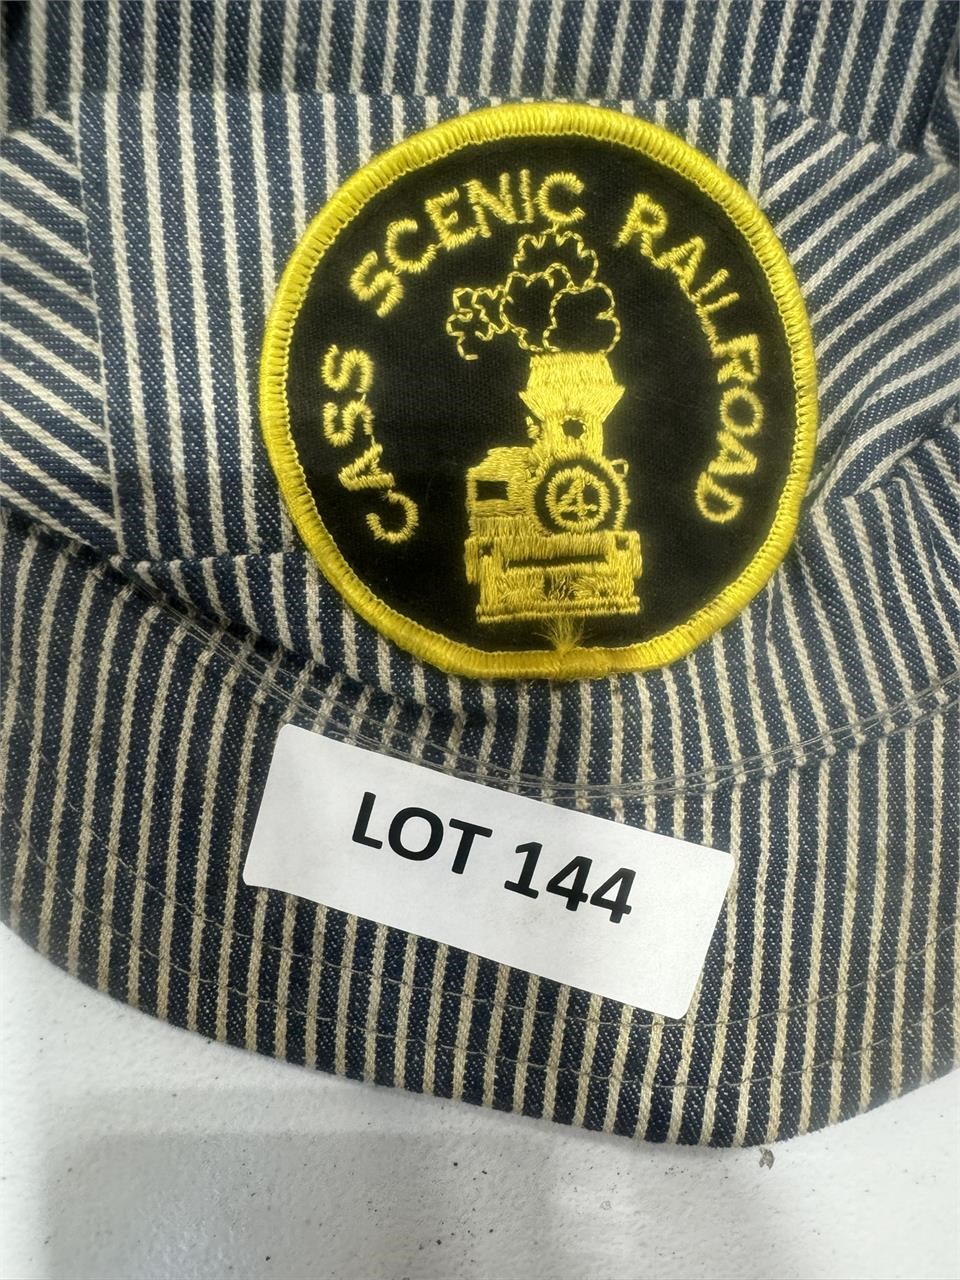 Railroad hat